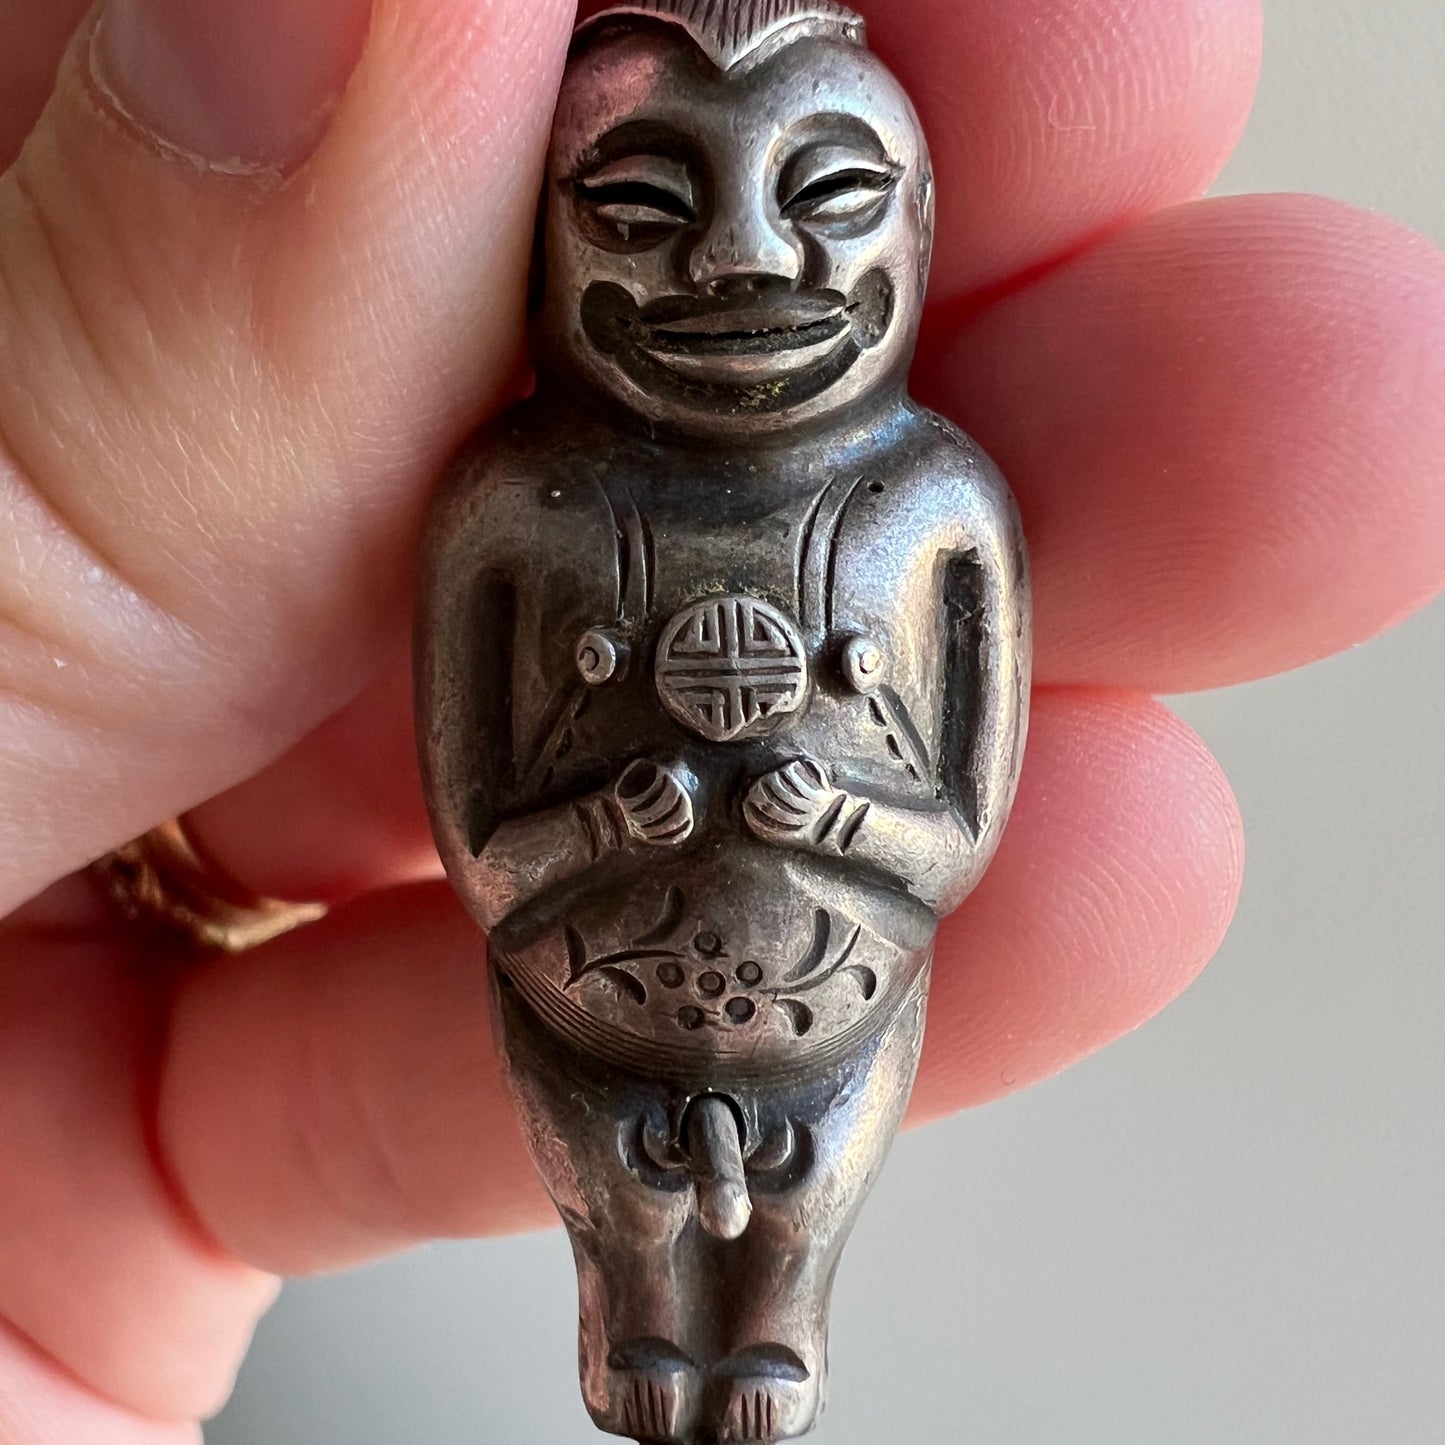 A N T I Q U E // dynamic fellow / Qing dynasty silver fertility figure / a pendant